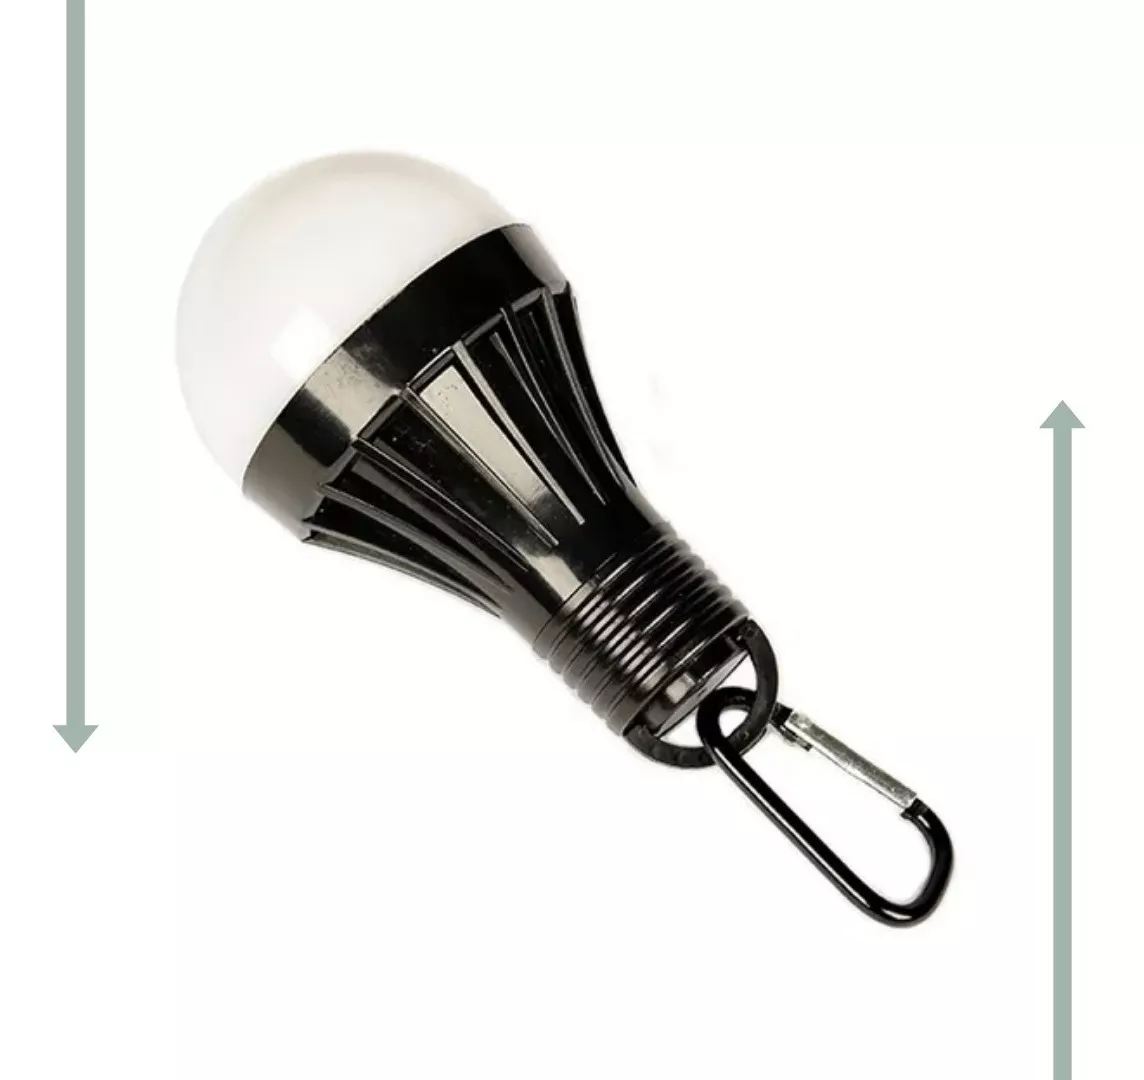 Segunda imagem para pesquisa de lampada a pilha